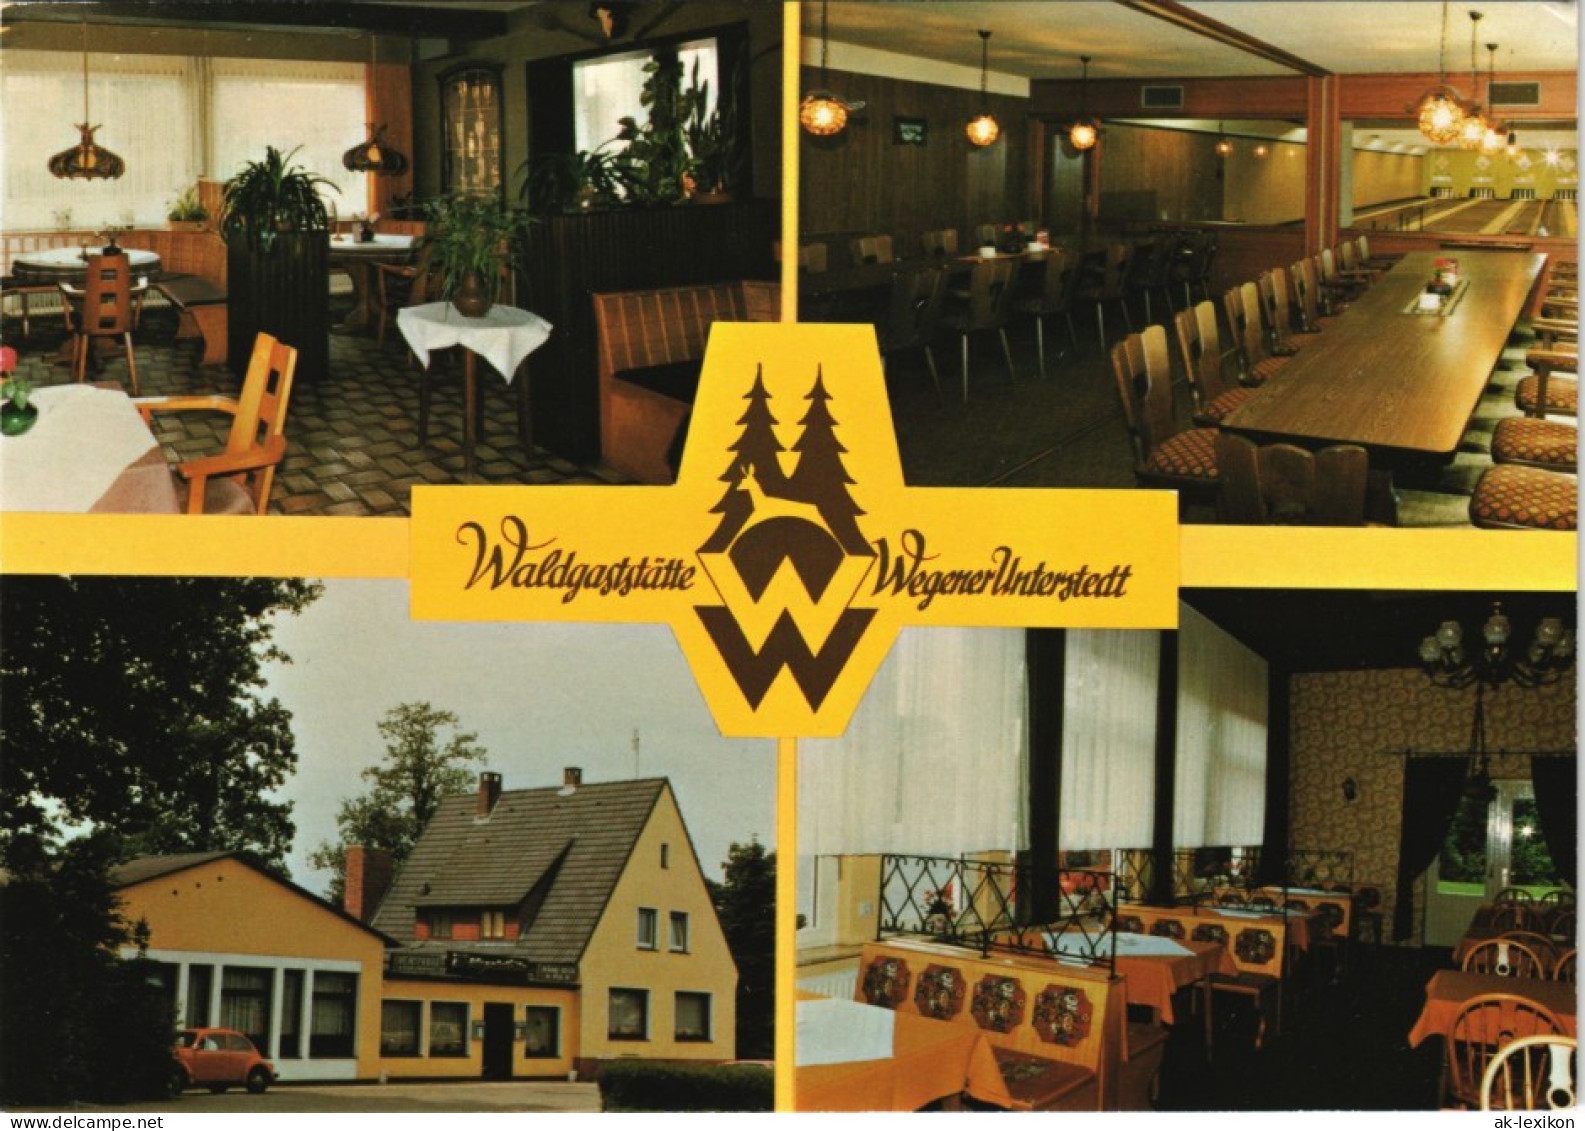 Rotenburg (Wümme) Waldgaststätte Wegener Mehrbild-AK 4 Ansichten 1980 - Rotenburg (Wümme)